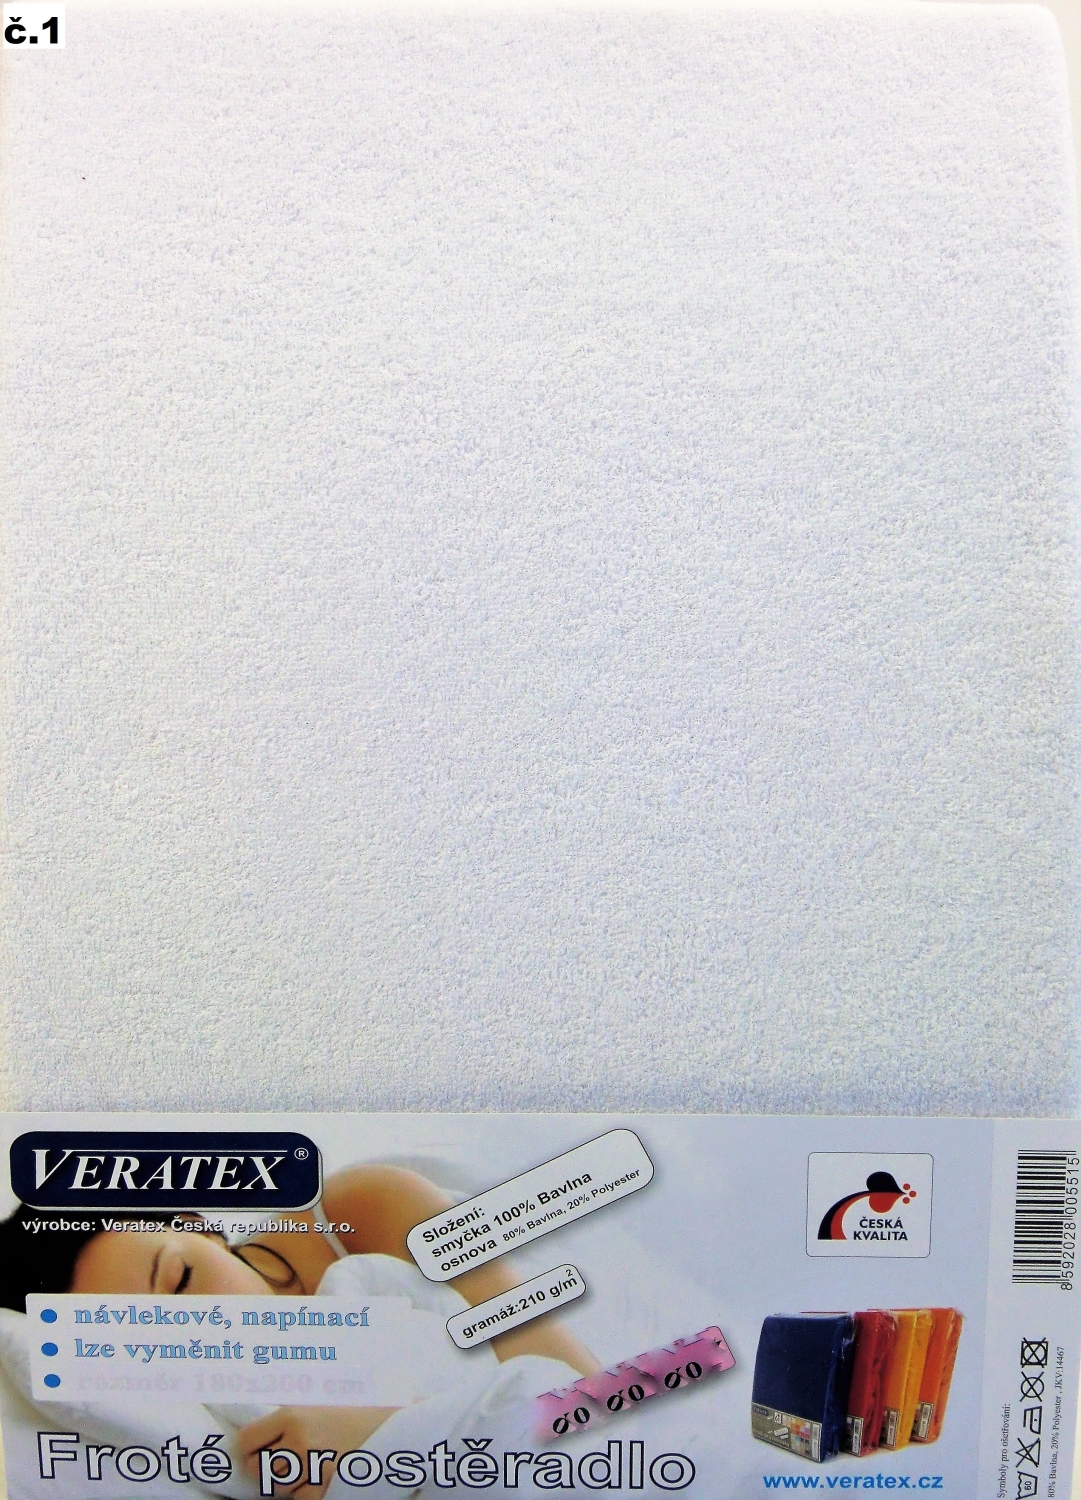 Veratex Froté prostěradlo 140x200 cm (č. 1-bílá)